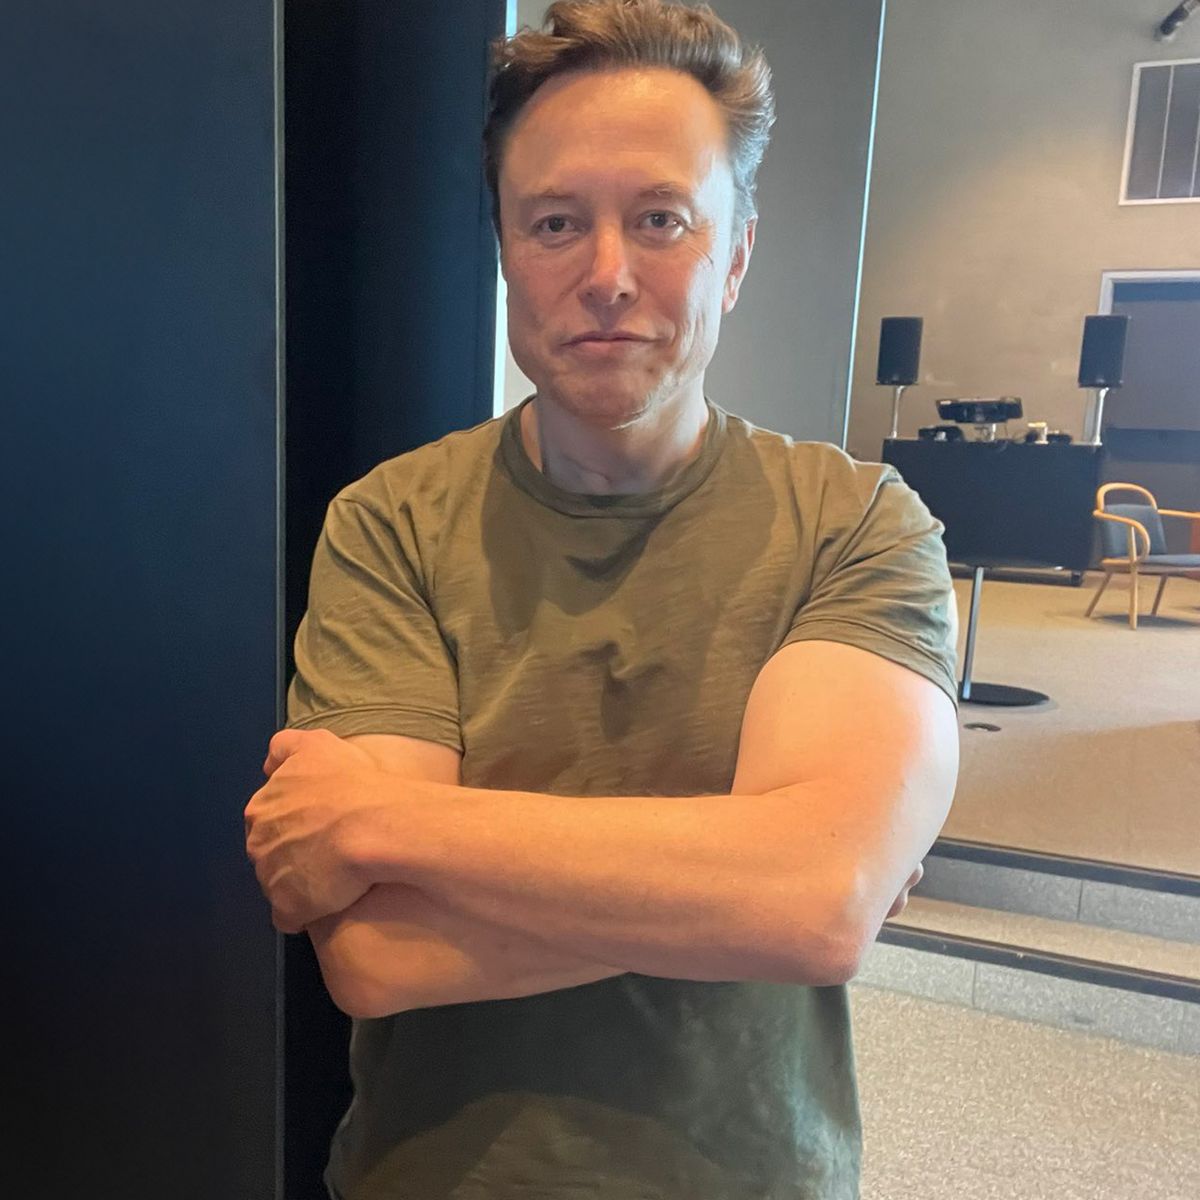 Elon Musk, qui a grandi en Afrique du Sud, affirme avoir participé à plusieurs combats de rue intenses.